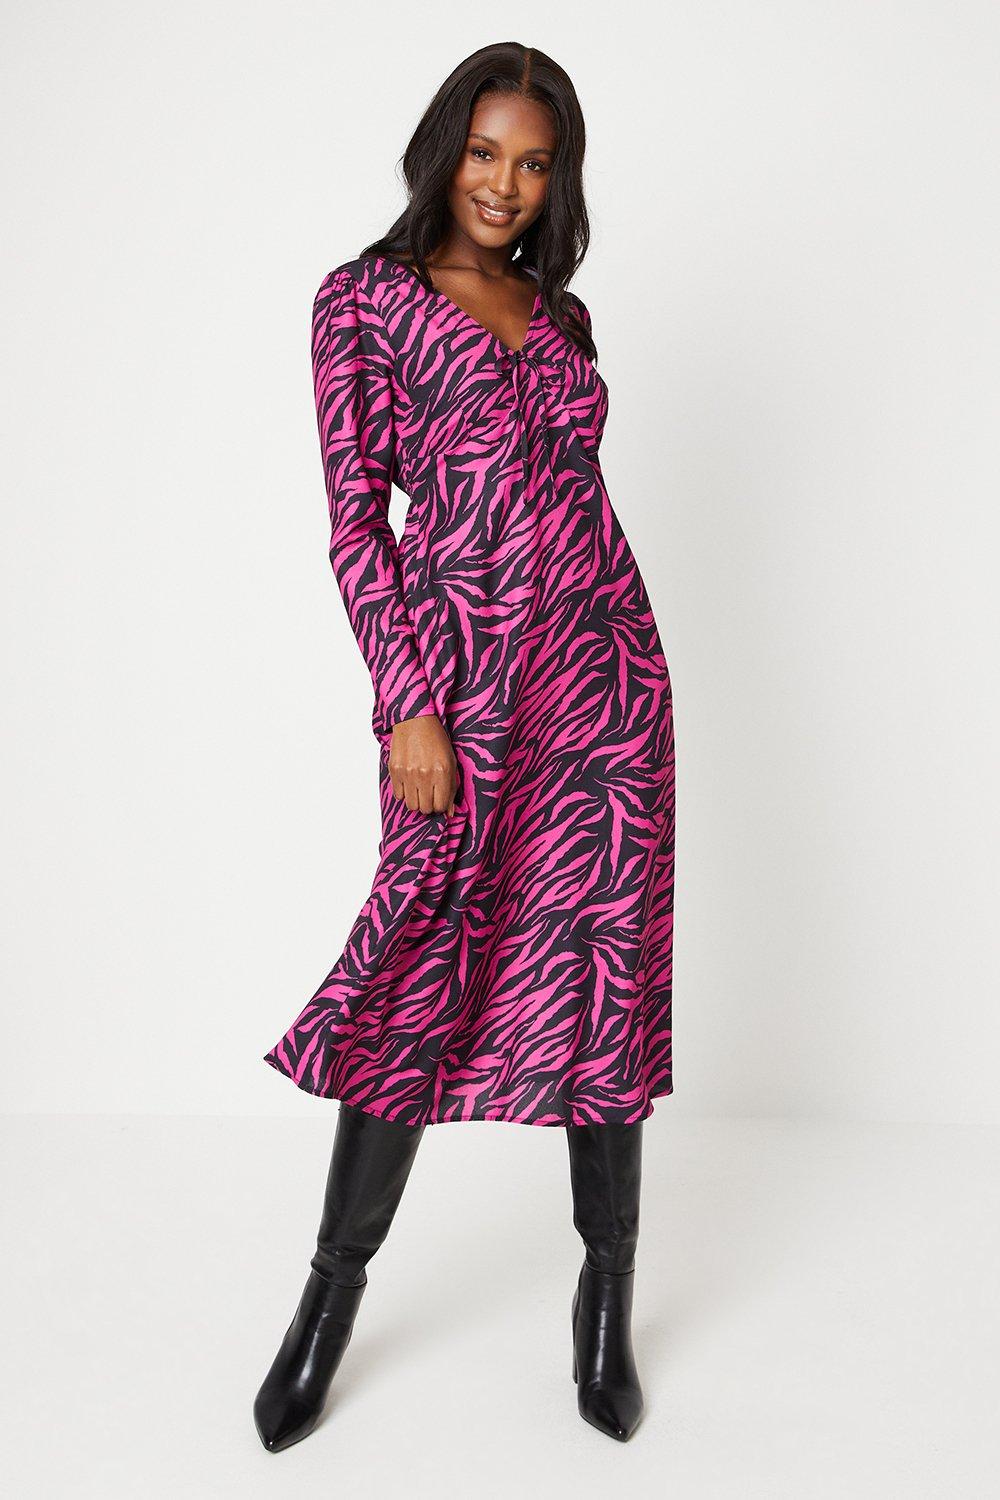 платье миди zen с зеброй tommy bahama цвет double chocolate Розовое платье миди с завязкой спереди и зеброй Dorothy Perkins, мультиколор